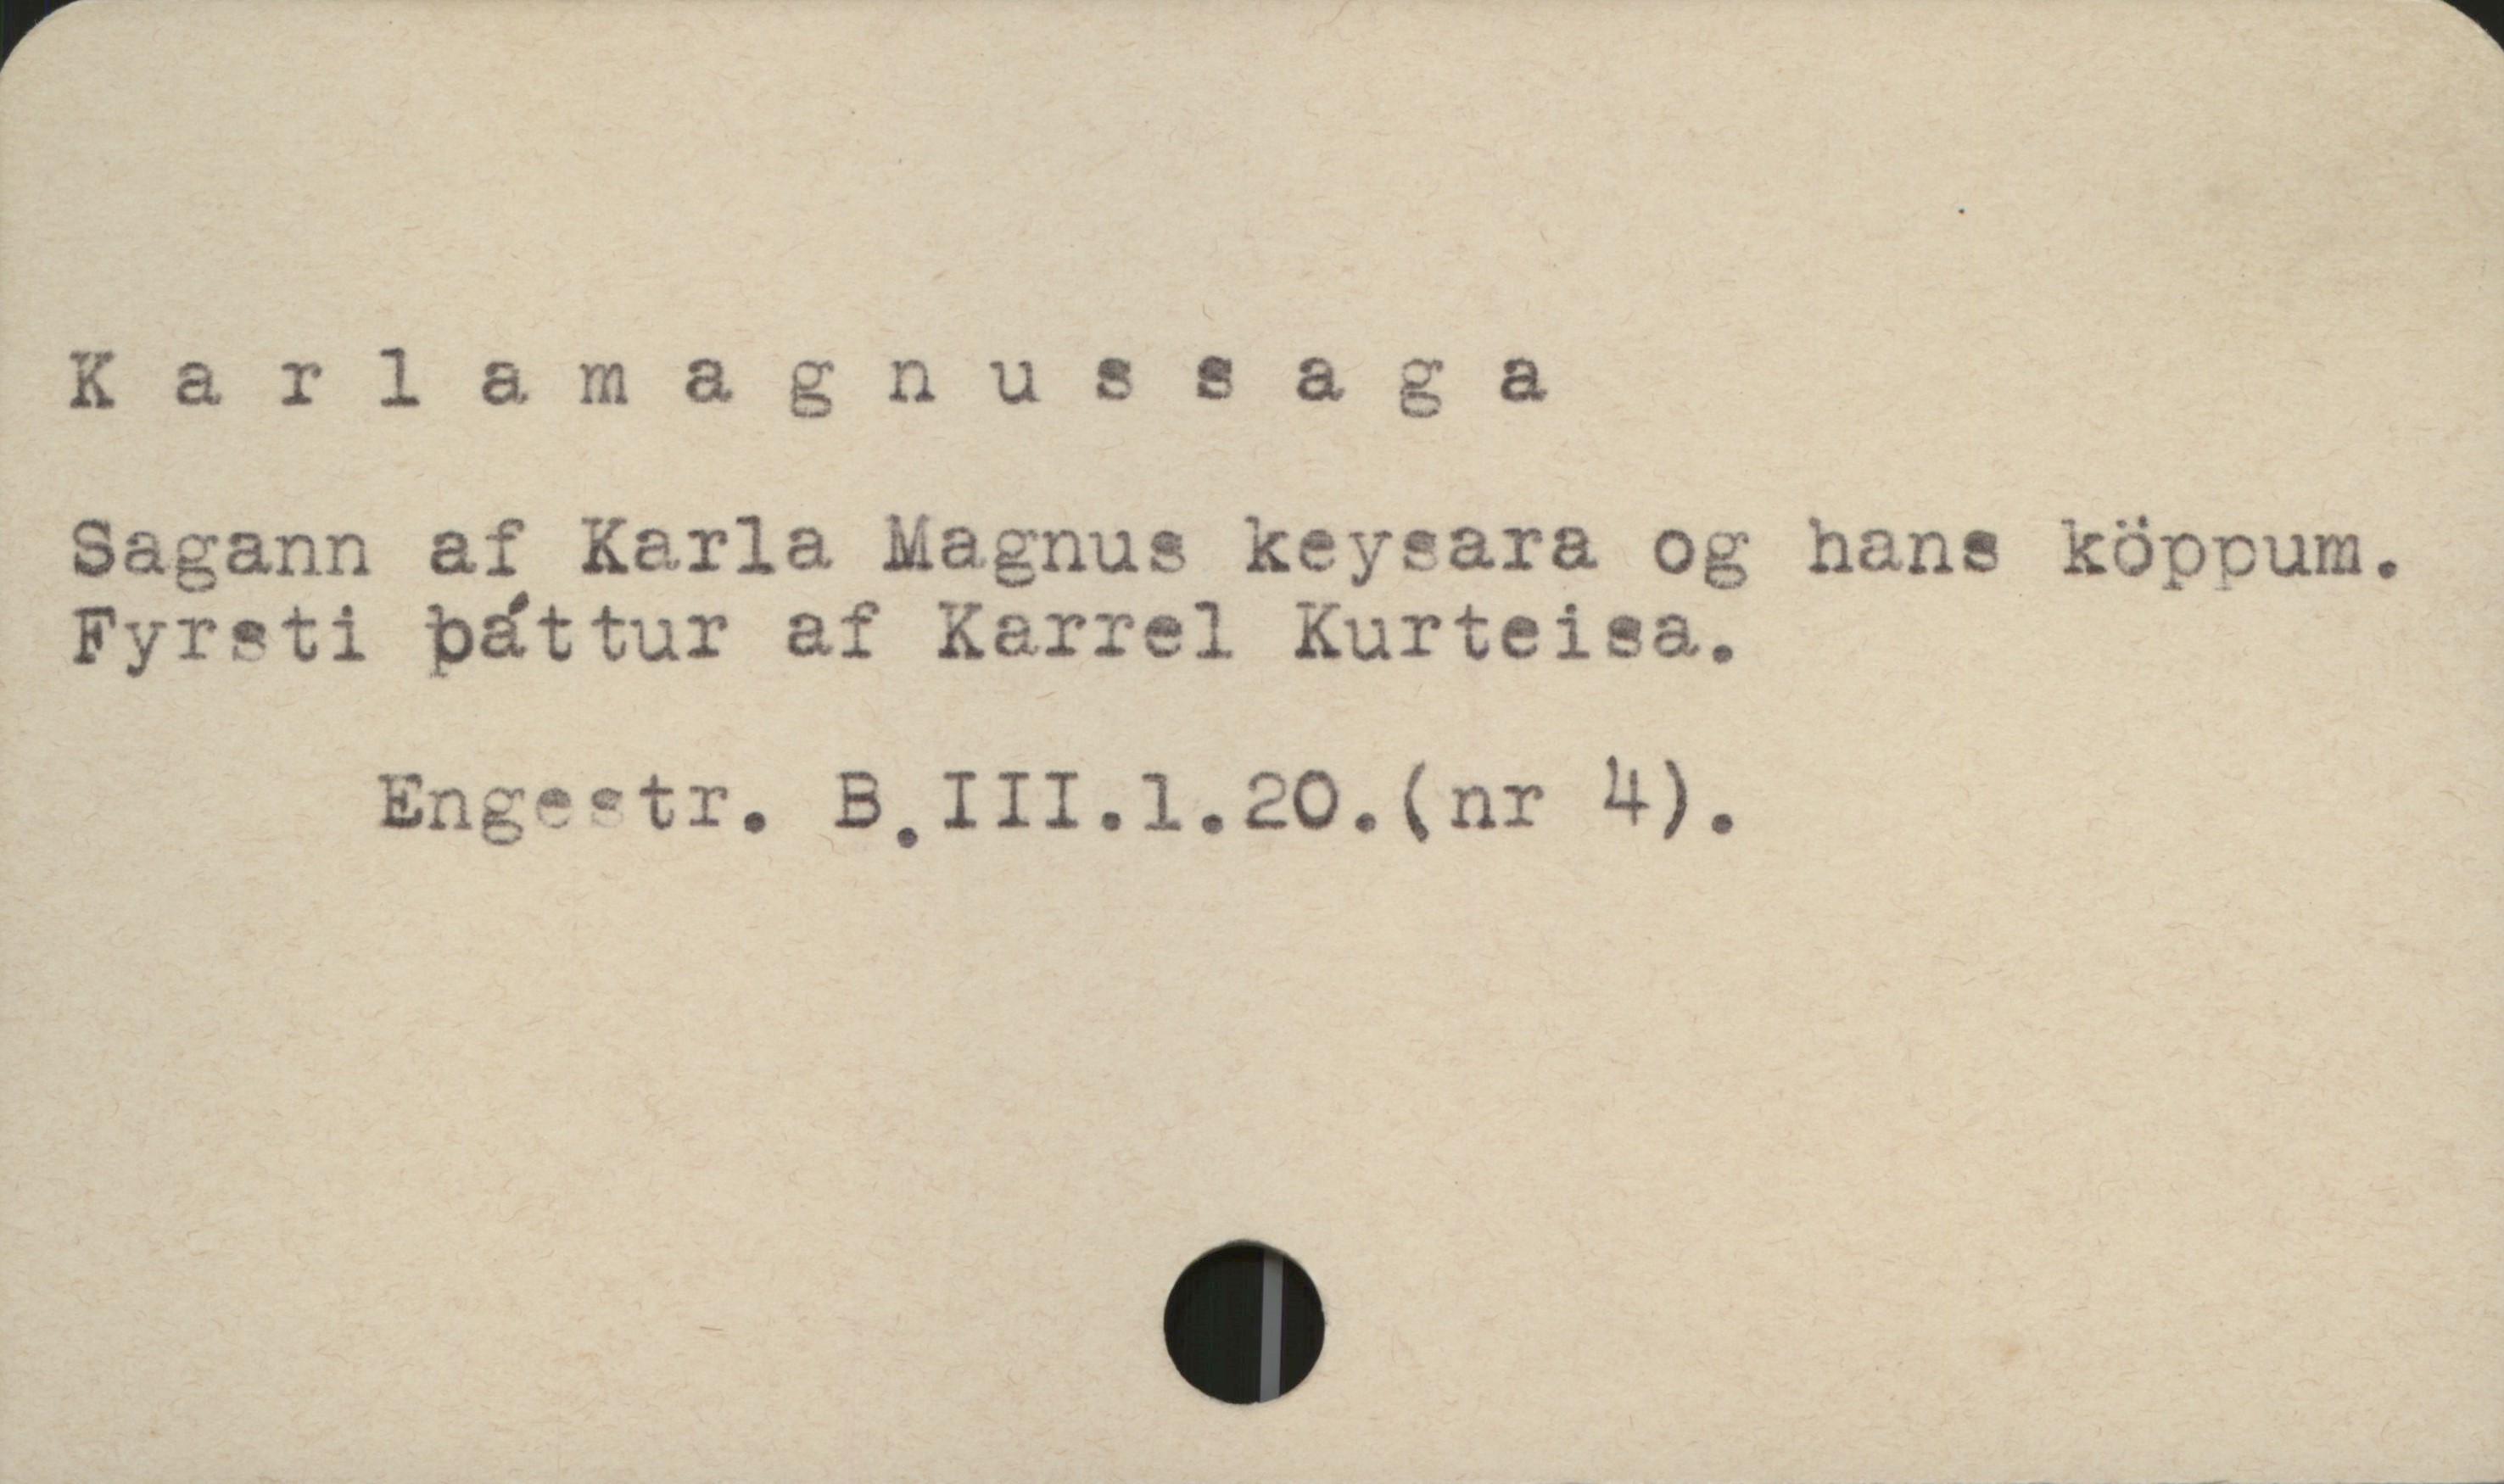 Karlamagnussaga Karlamagnussaga
Sagann af Karla Magnus keysara og hans köppum.
Fyrati båttur af Karrel Kurteisa.

Engestr. B,III.1.20.(nr 4),